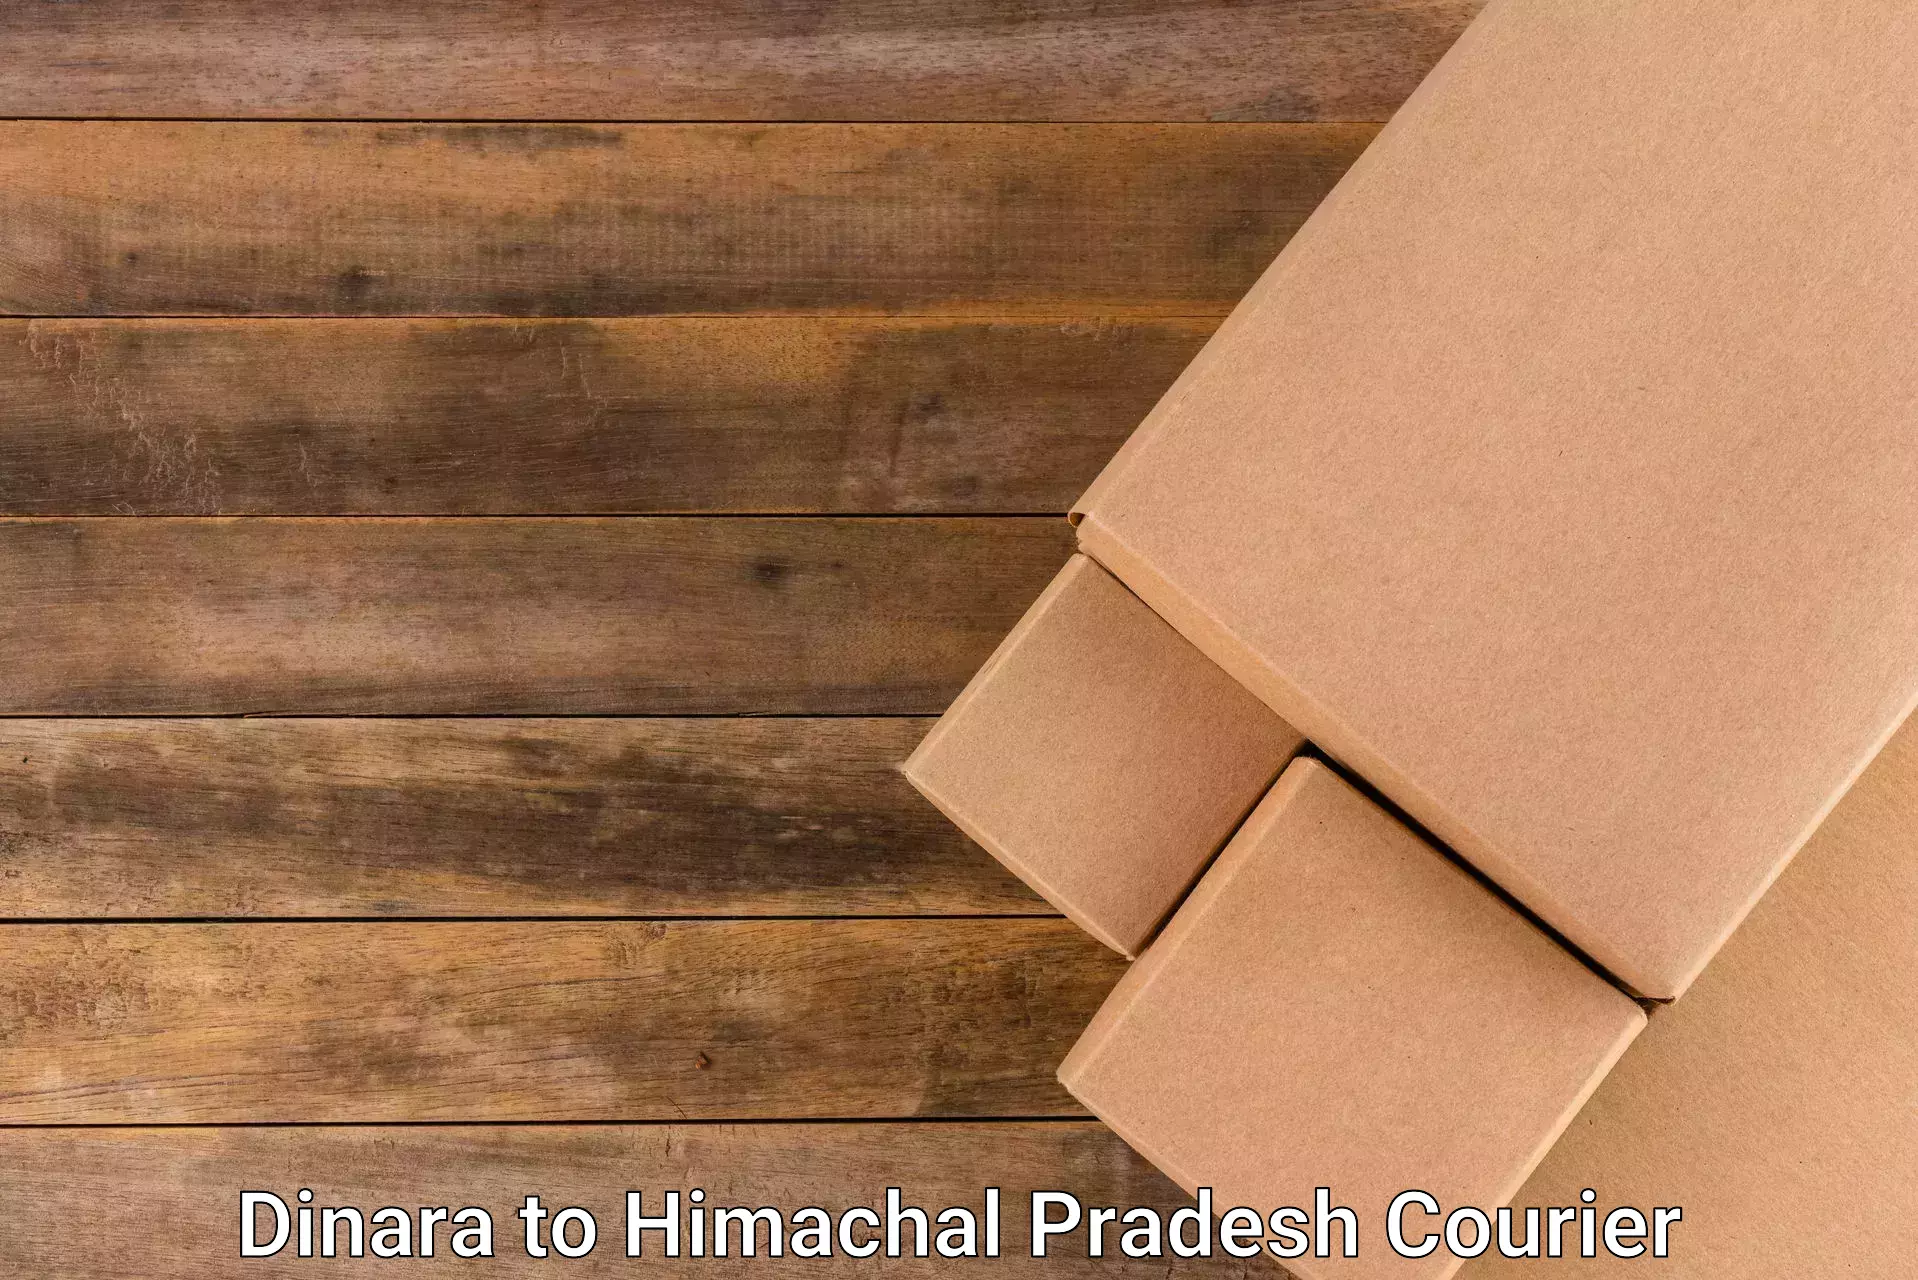 High value parcel delivery in Dinara to Una Himachal Pradesh